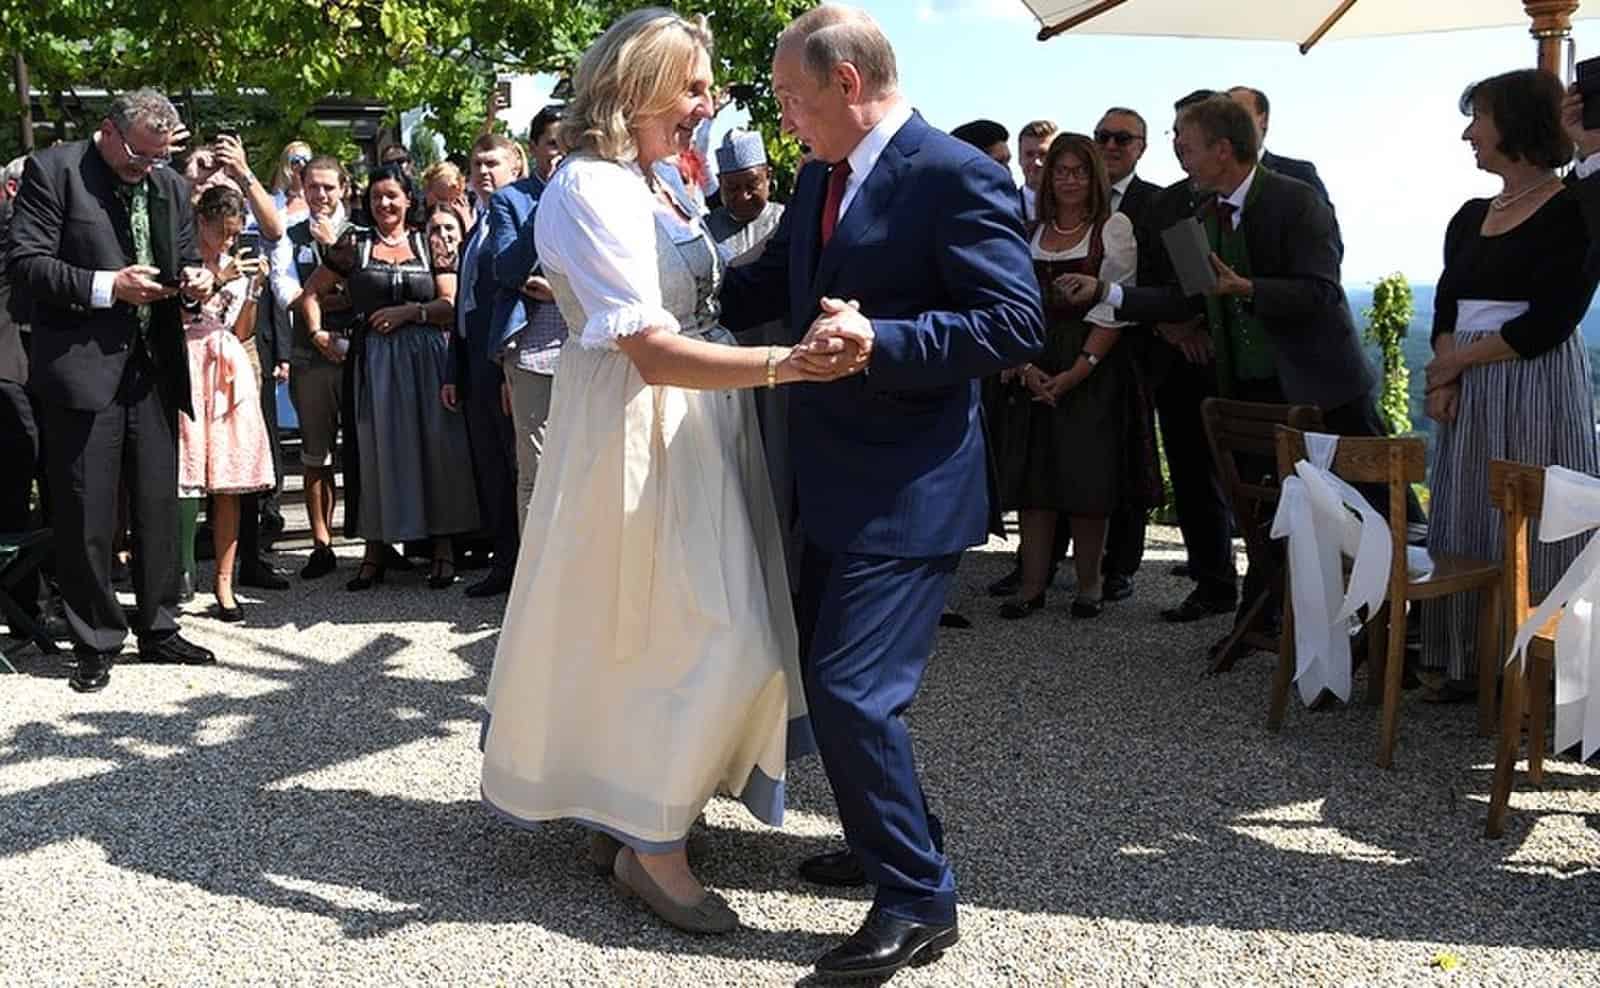 Putin dancing